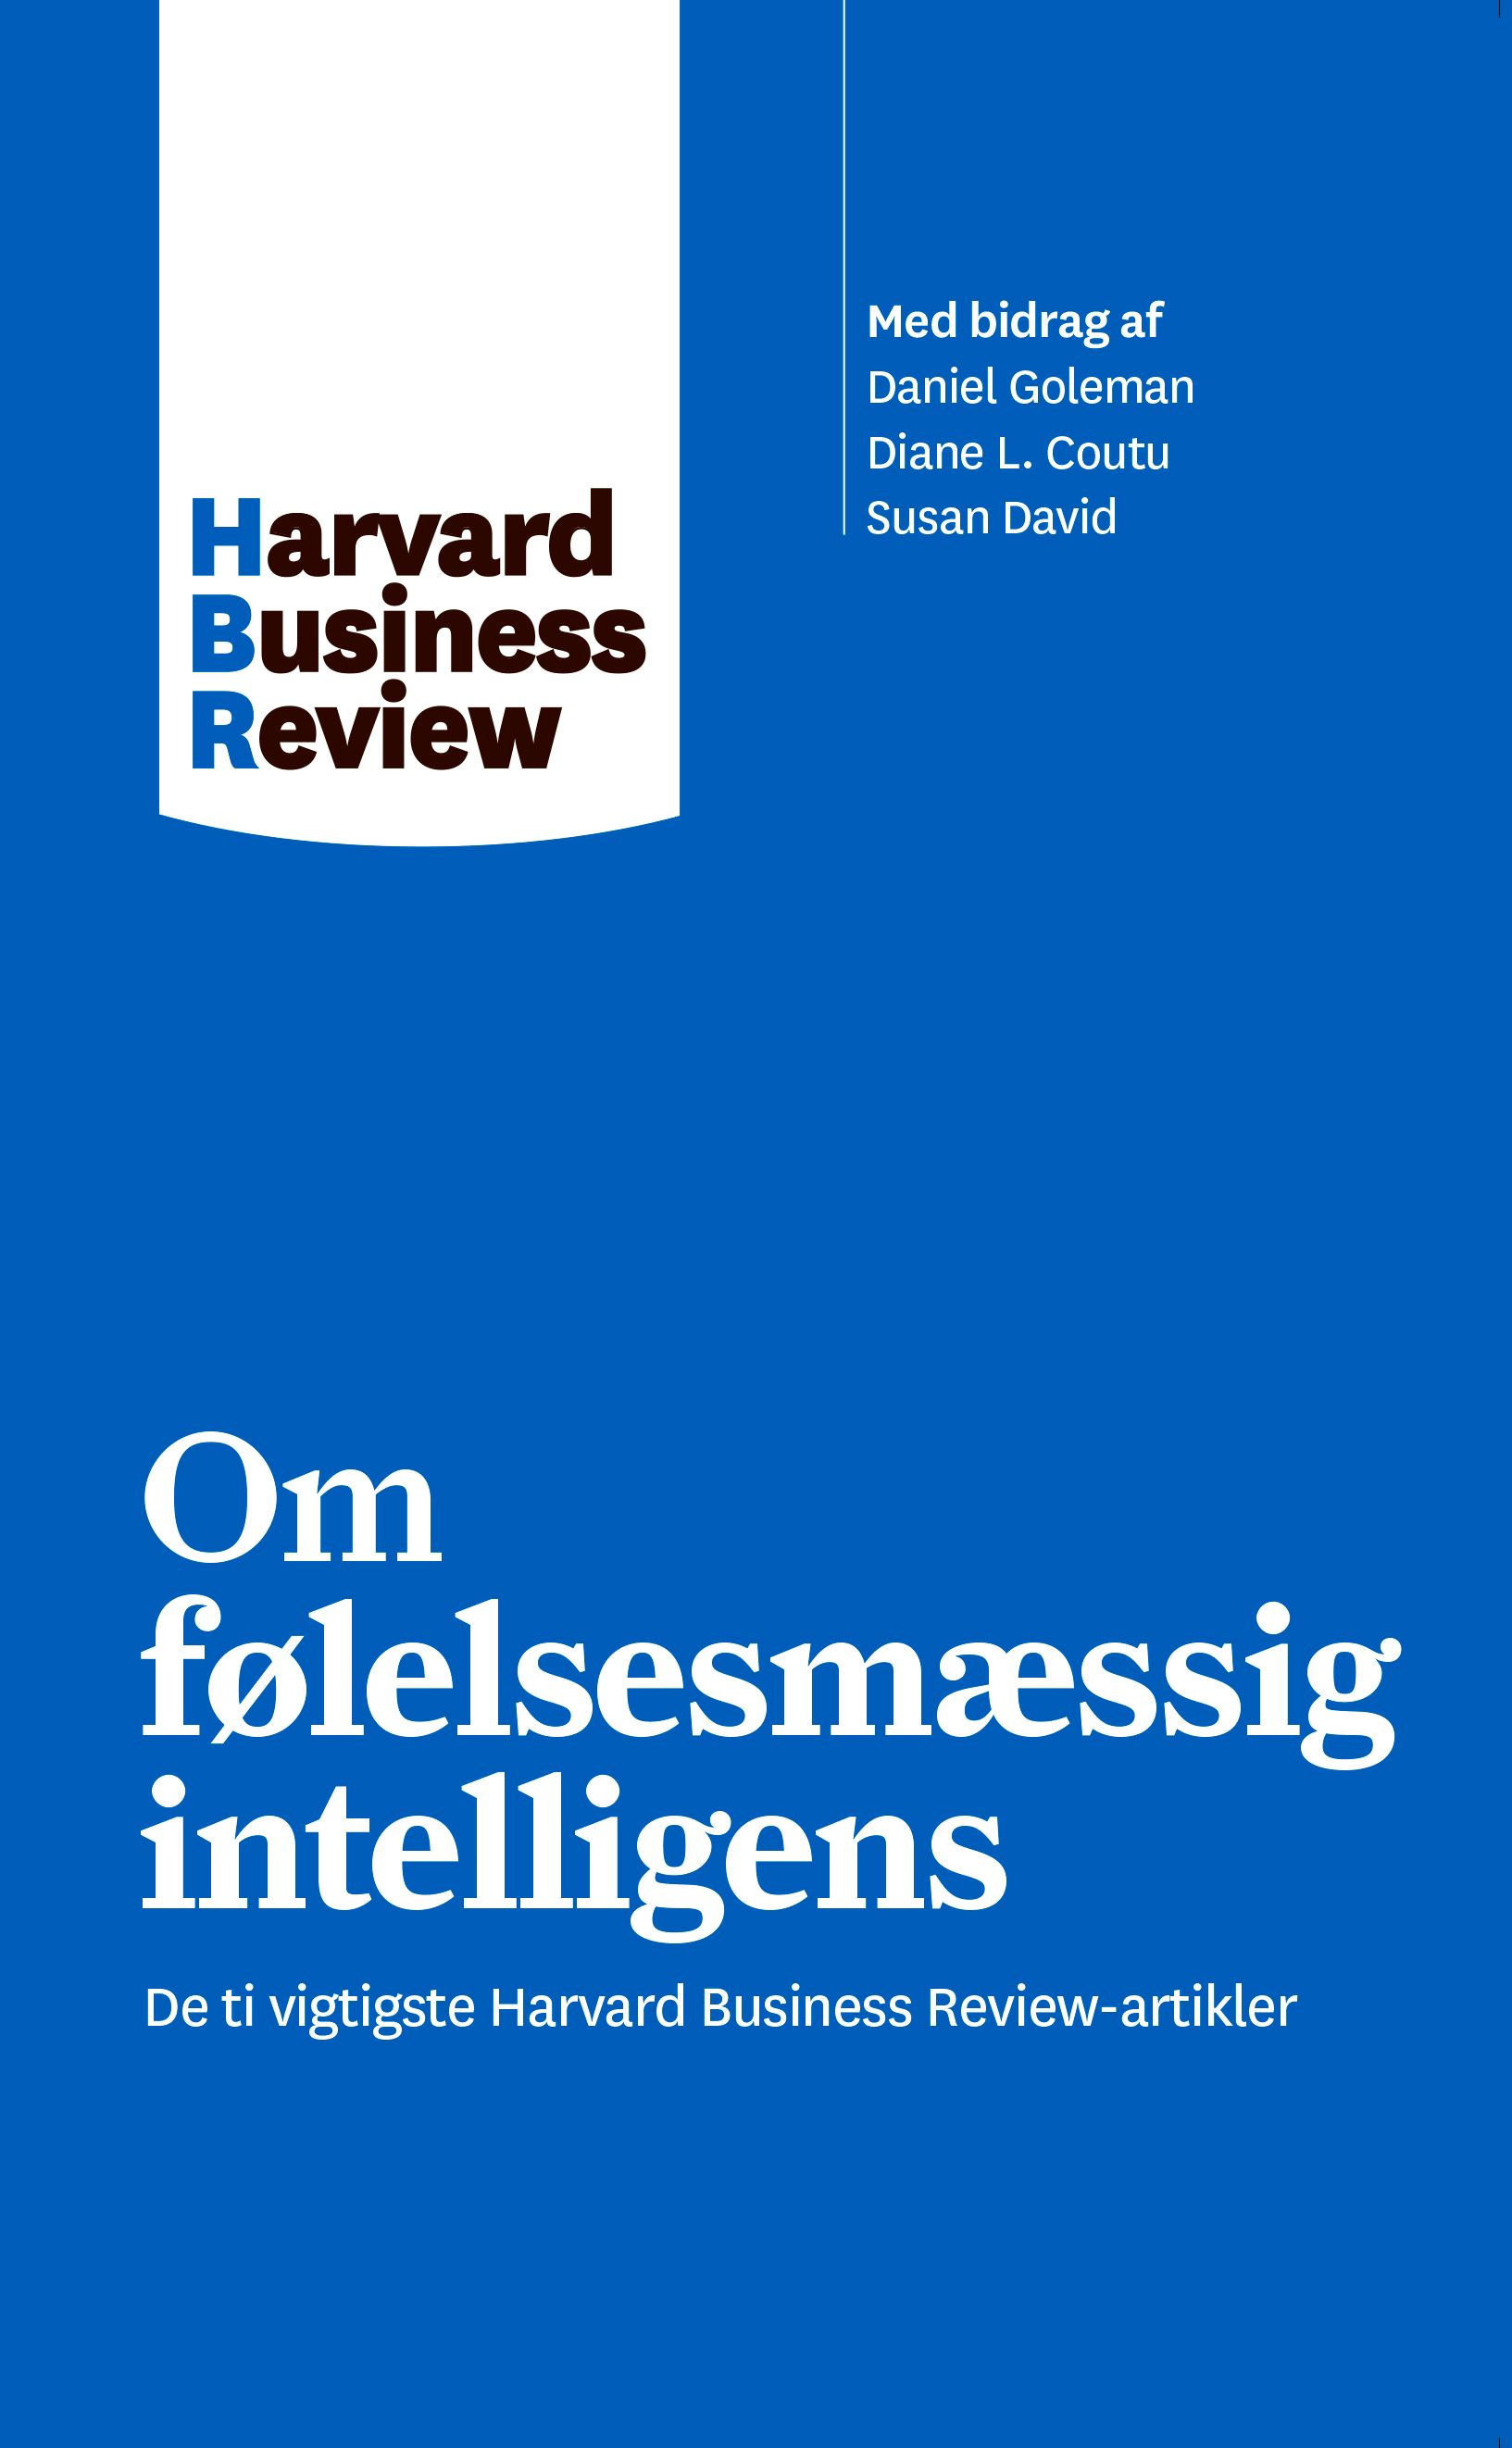 Om følelsesmæssig intelligens, e-bog af Harvard Business Review